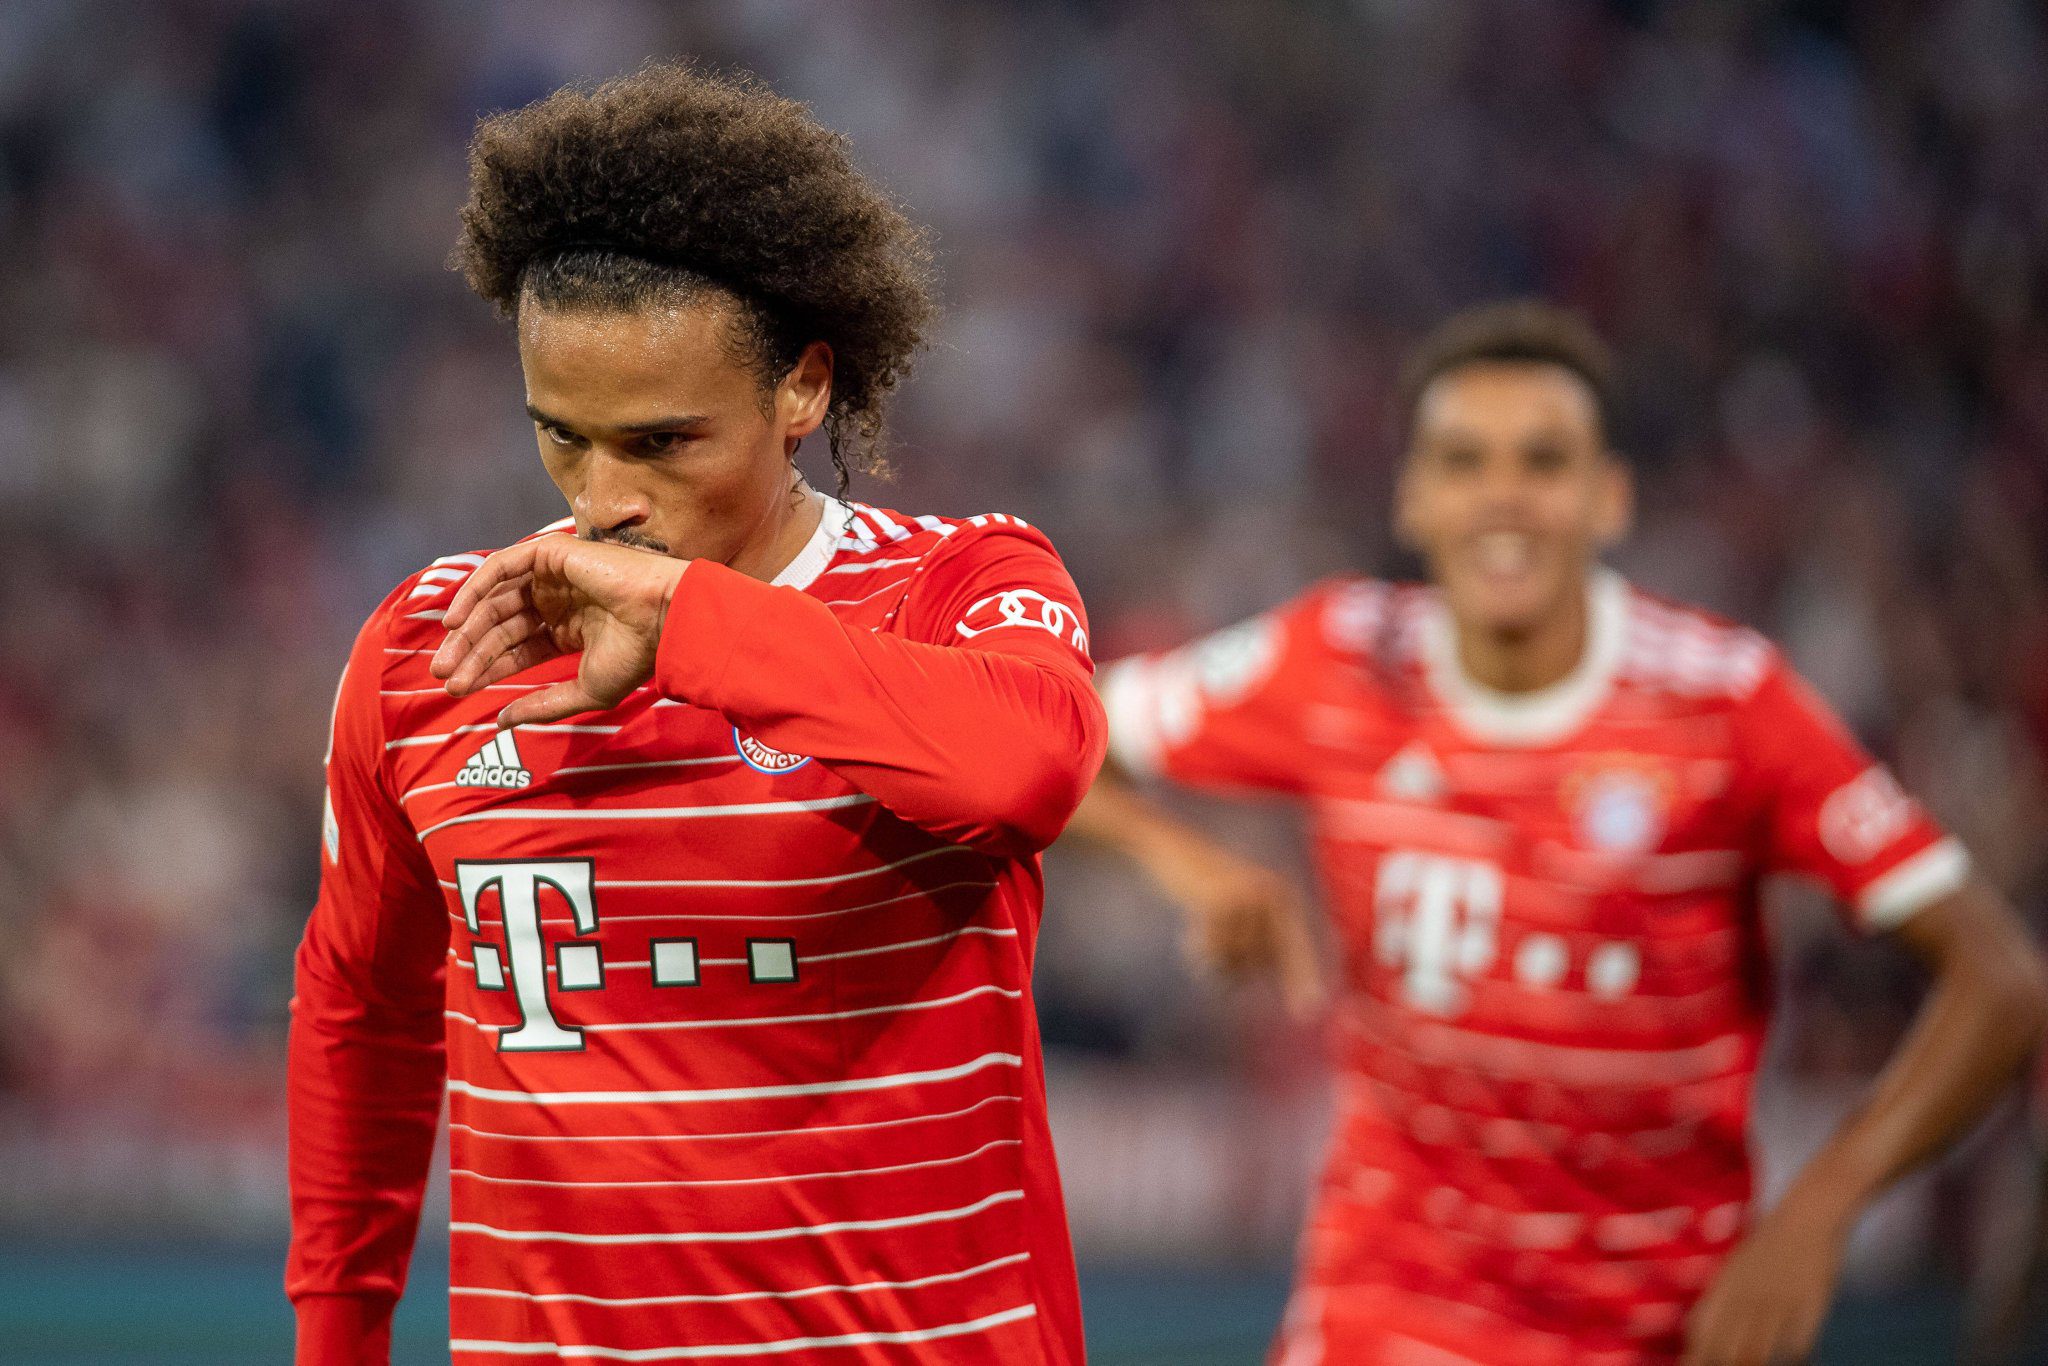 Al Bayern le bastaron las dos anotaciones para sentenciar un juego en el que por momentos fue dominado por un rival que no tuvo puntería